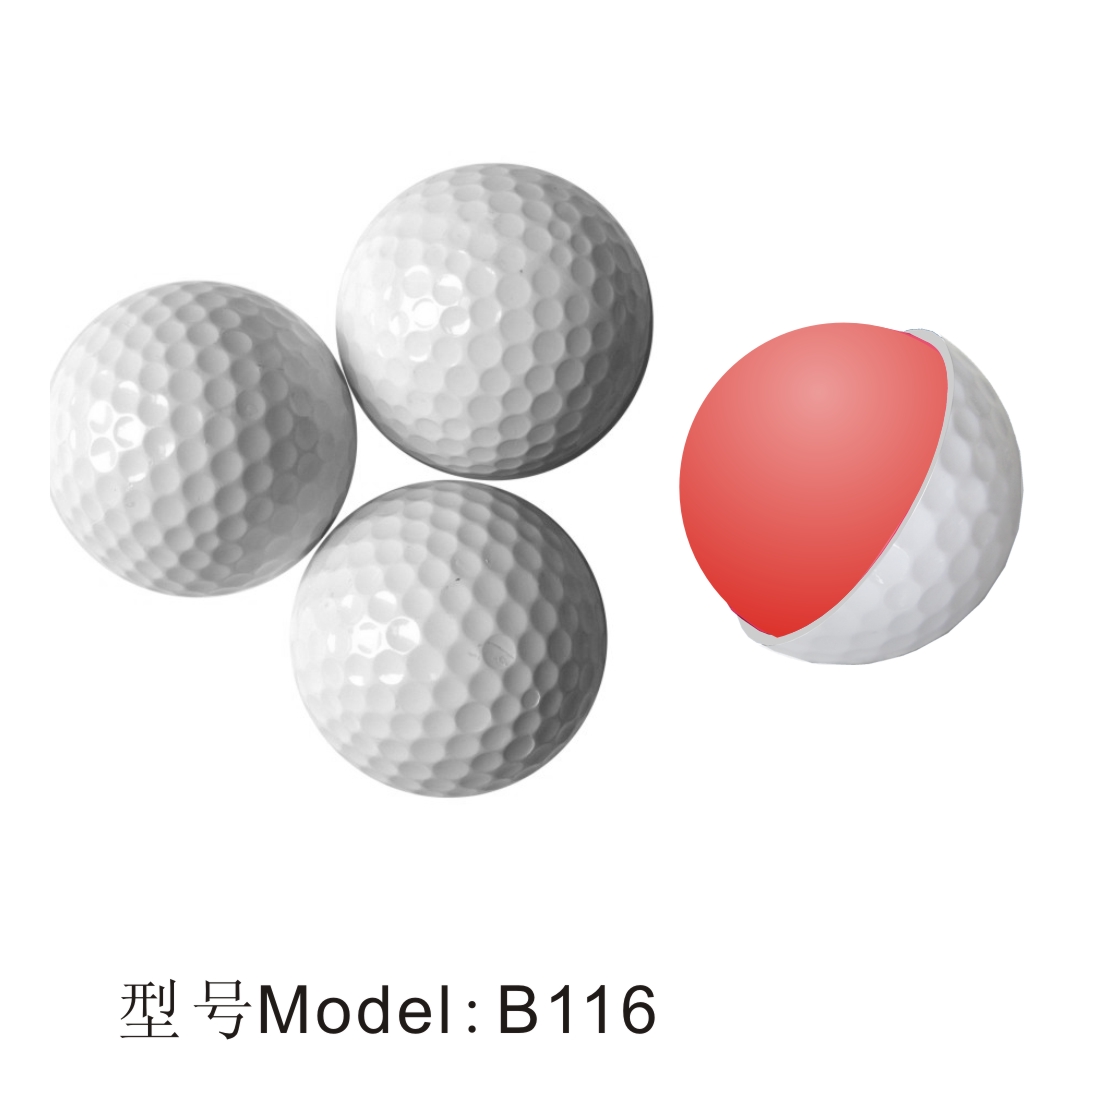 百事特凯盾高尔夫球百事特凯盾高尔夫球 水晶 彩色 练习比赛球 golf高尔夫配件用品球